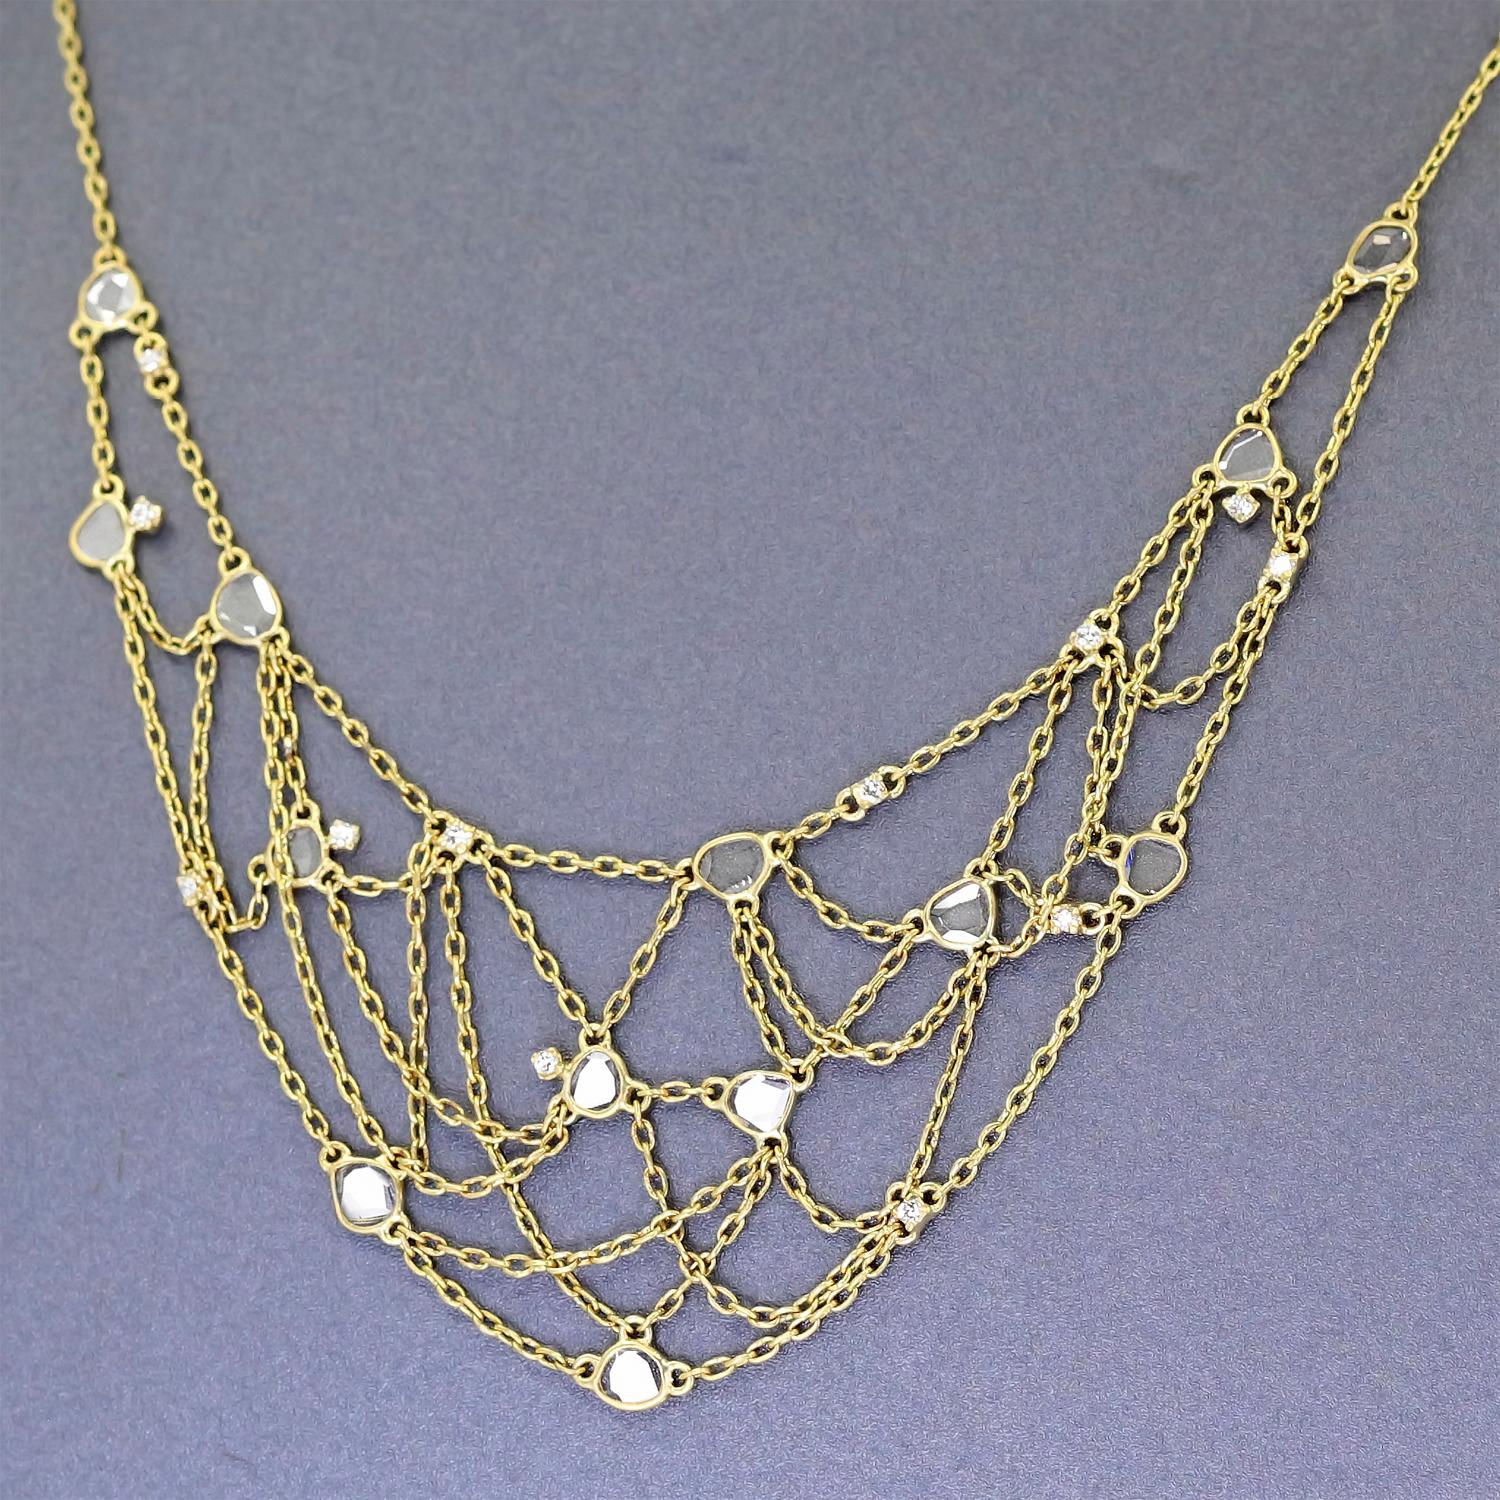 Einzigartige Diamant-Latz-Halskette, handgefertigt aus mattiertem 18-karätigem Gelbgold von Tej Kothari mit dreizehn facettierten Scheiben aus schimmernden Polki-Diamanten von insgesamt 0,75 Karat, akzentuiert mit zwölf runden weißen Diamanten im